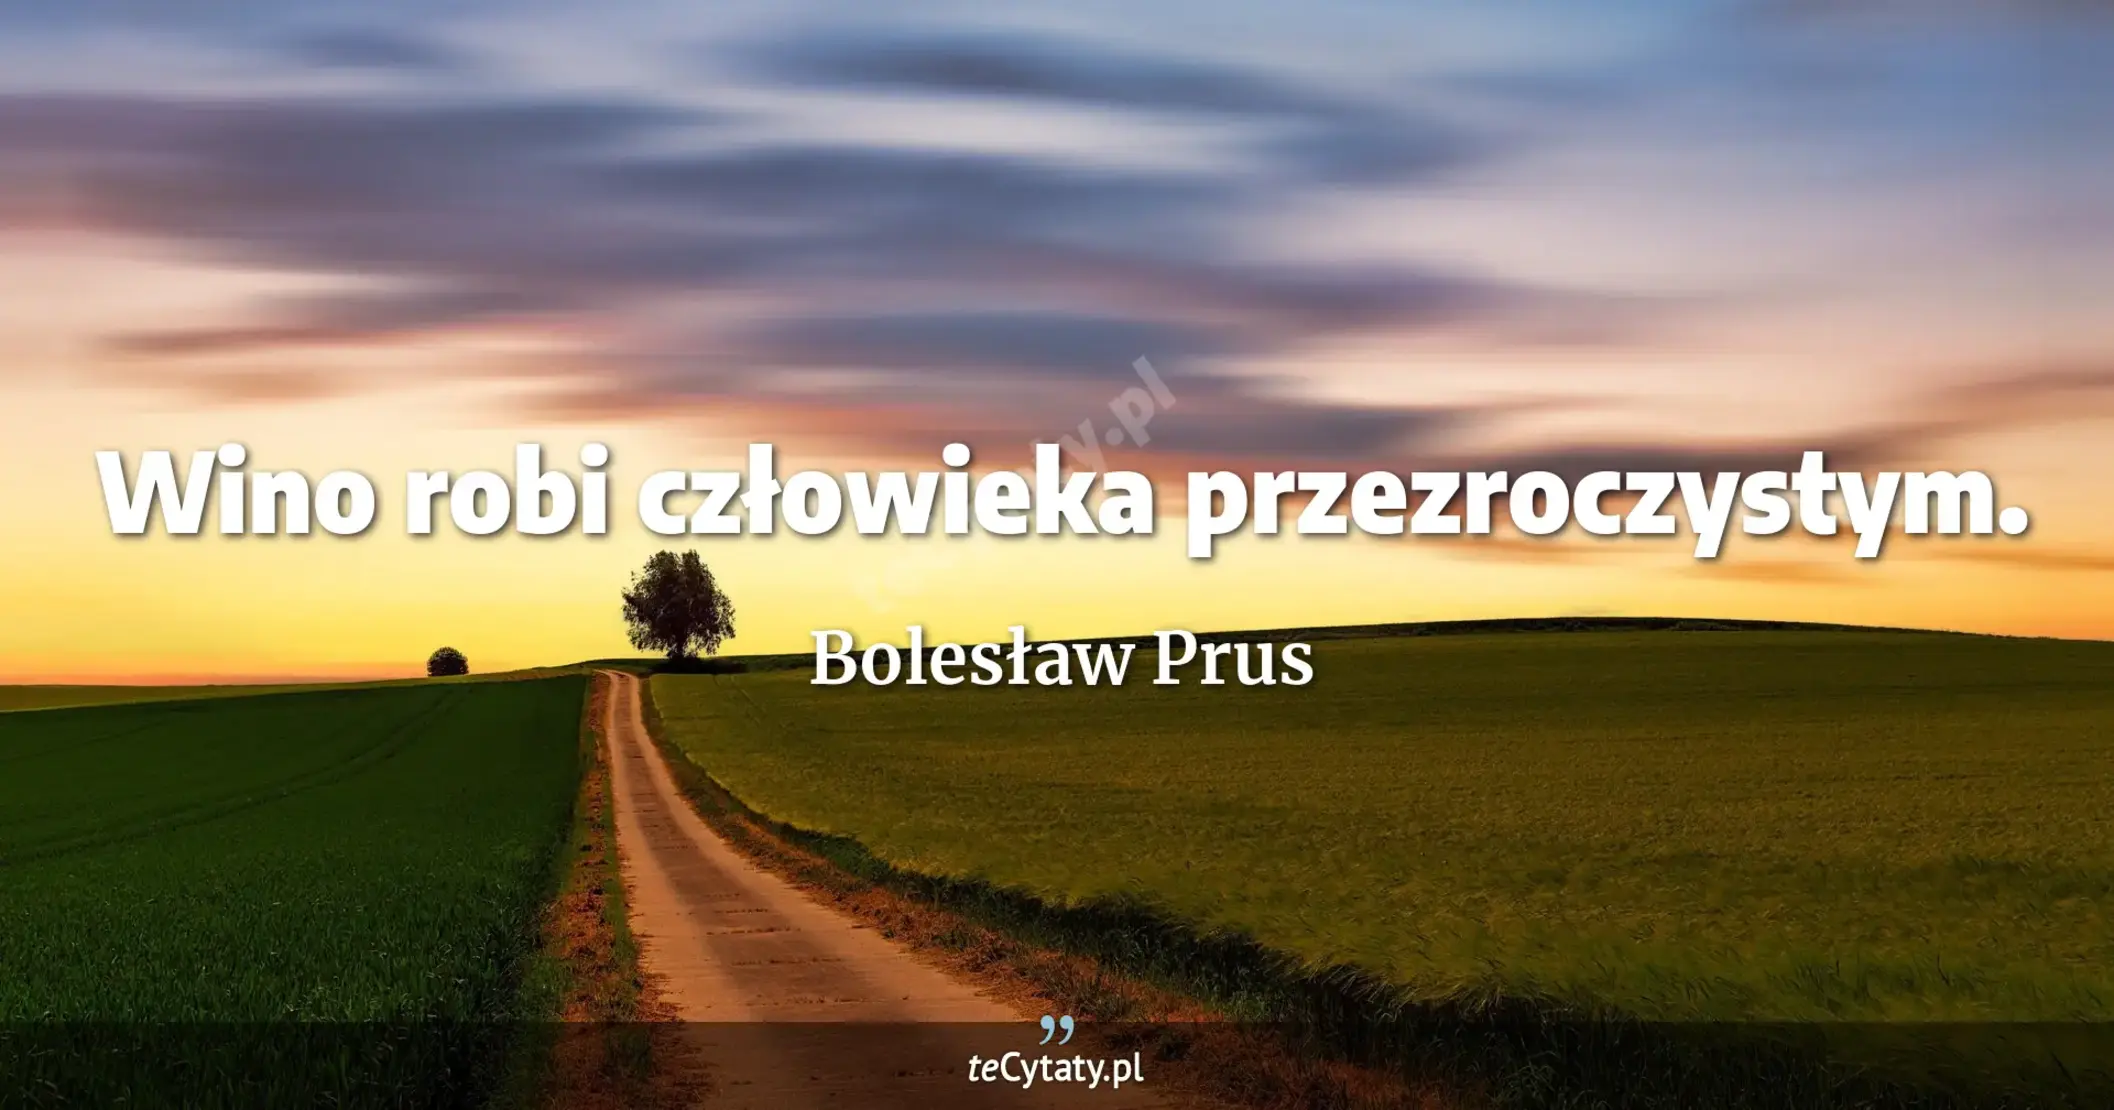 Wino robi człowieka przezroczystym. - Bolesław Prus